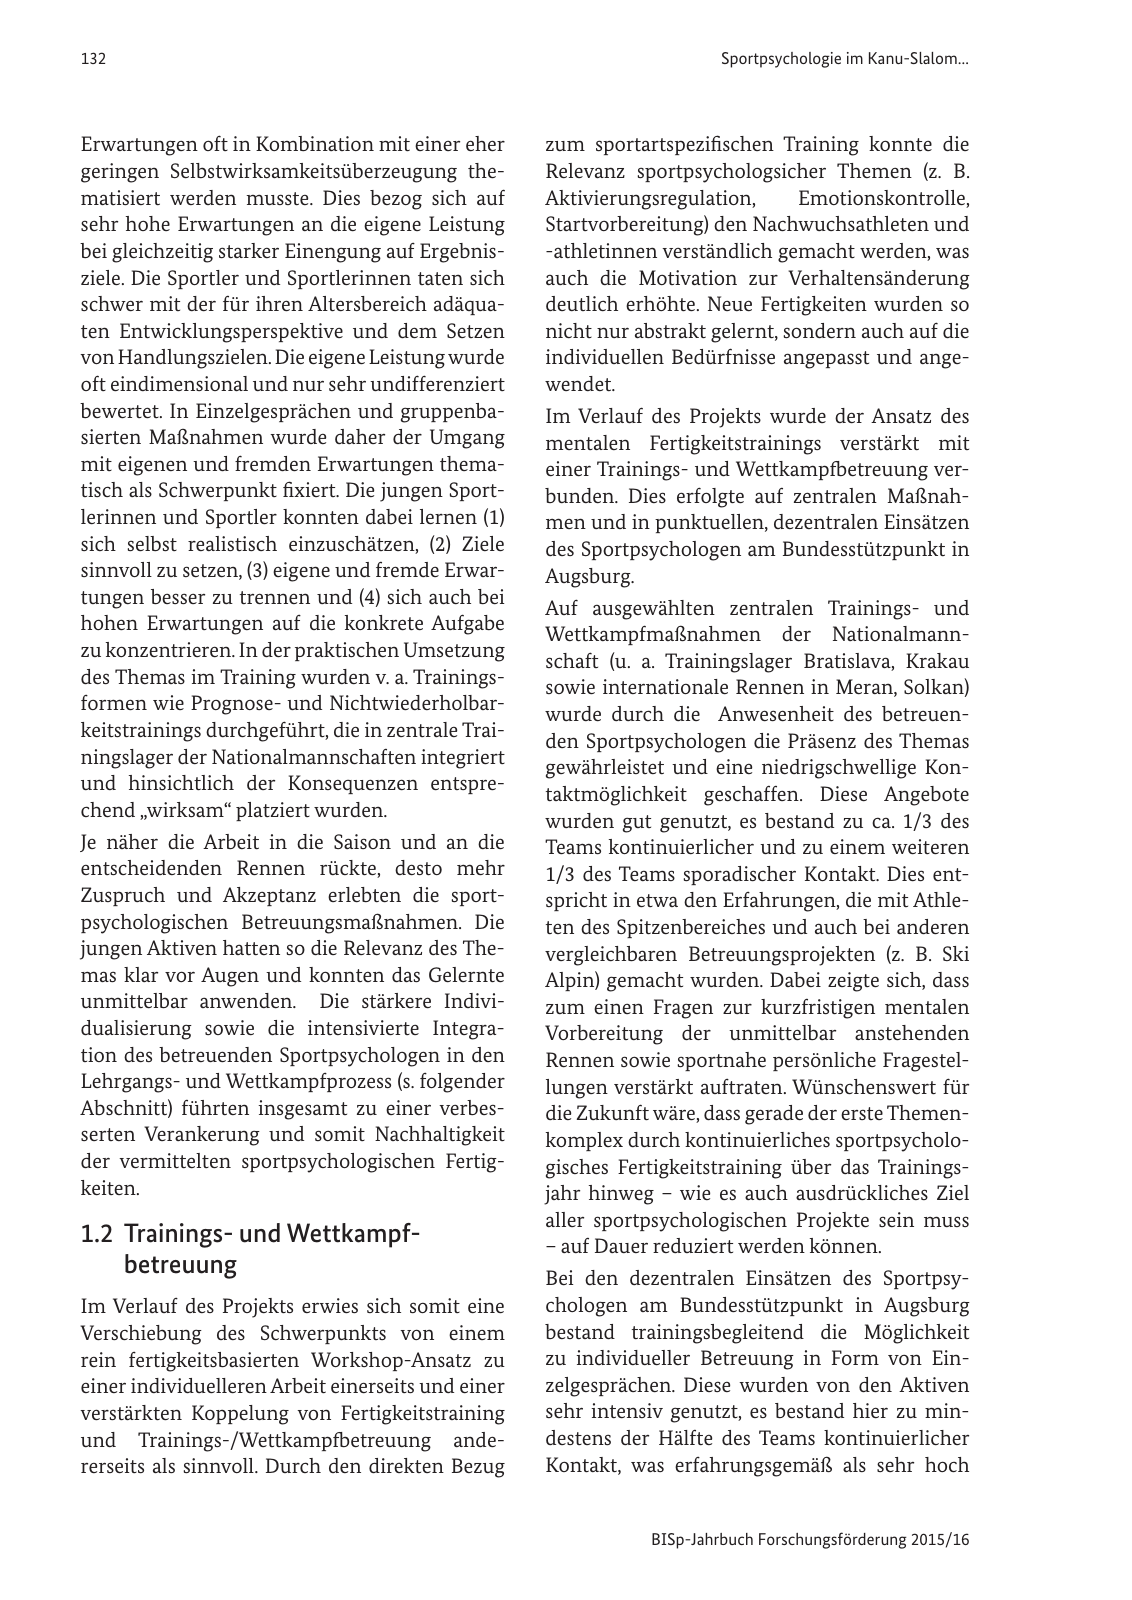 Vorschau BISp-Jahrbuch Forschungsförderung 2015/16 Seite 134